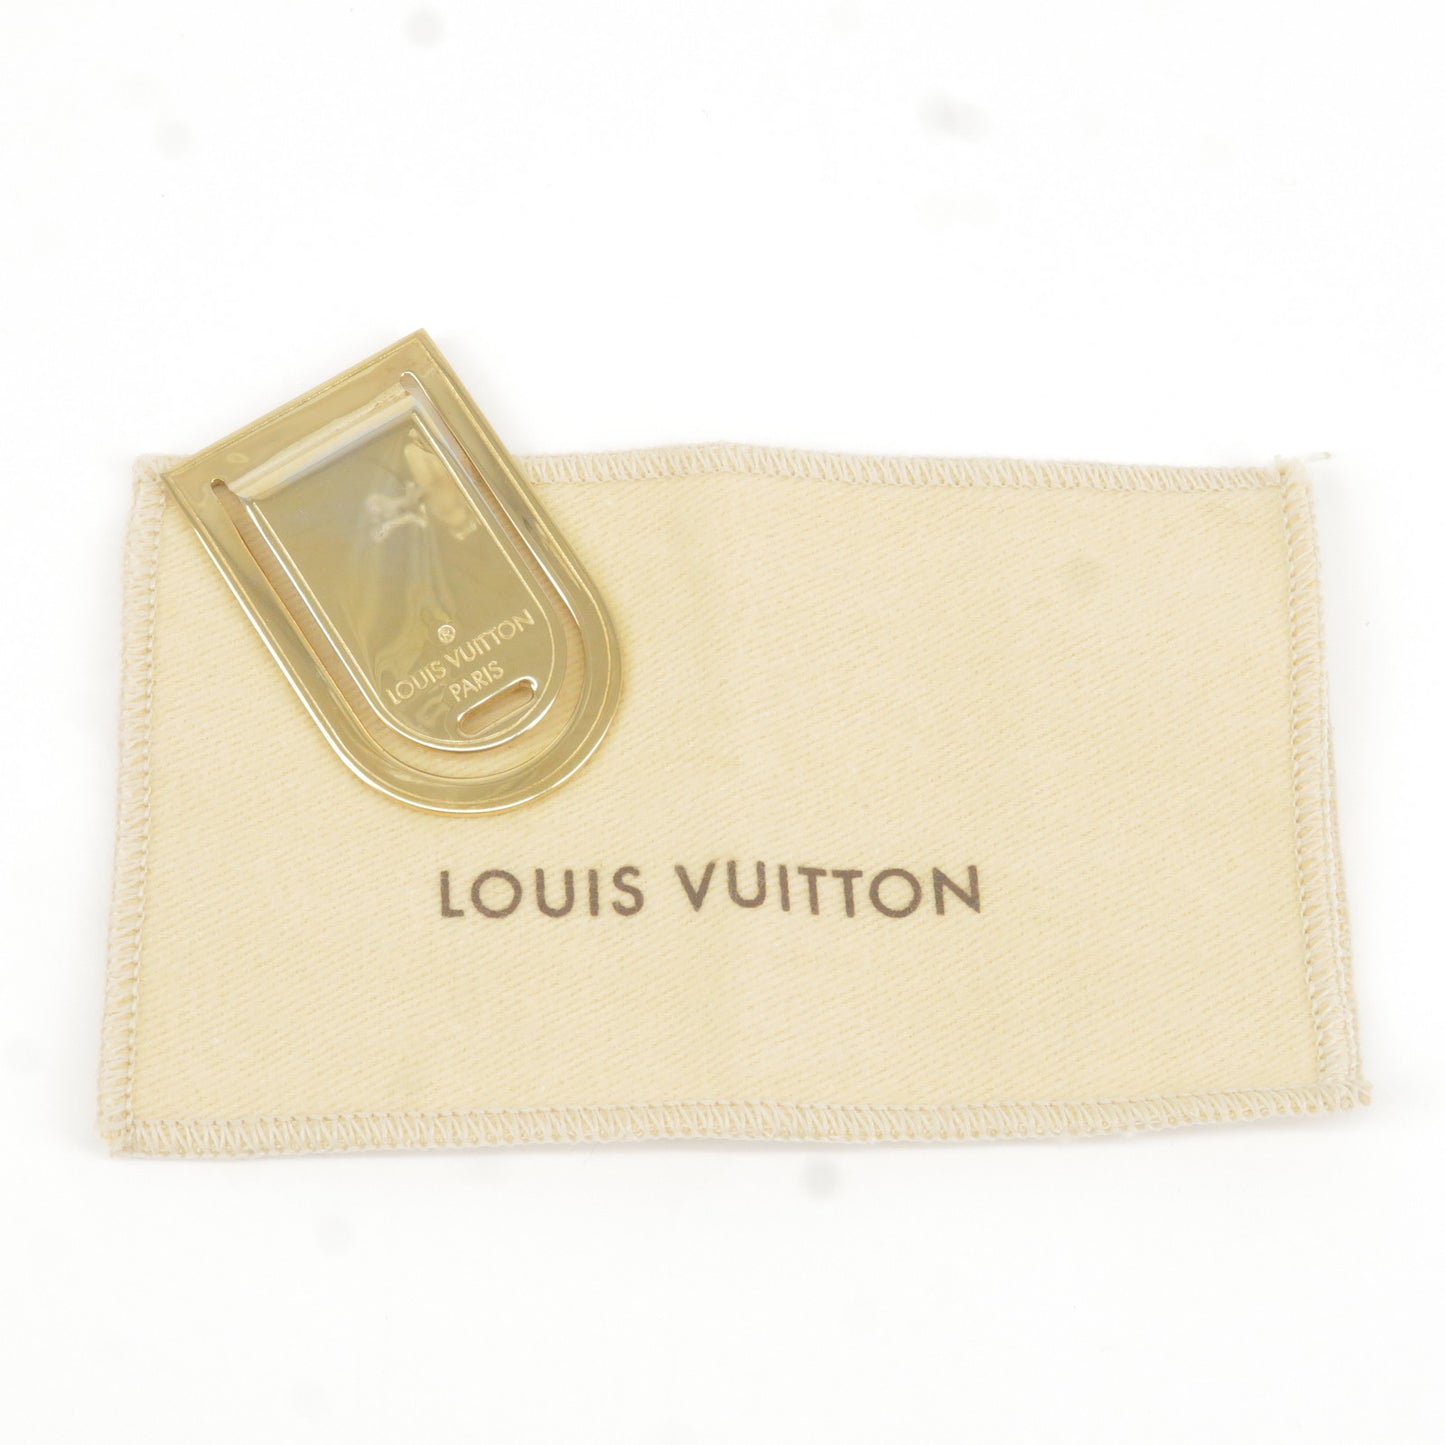 Louis Vuitton Pose a Bier Port Address Money Clip M65068